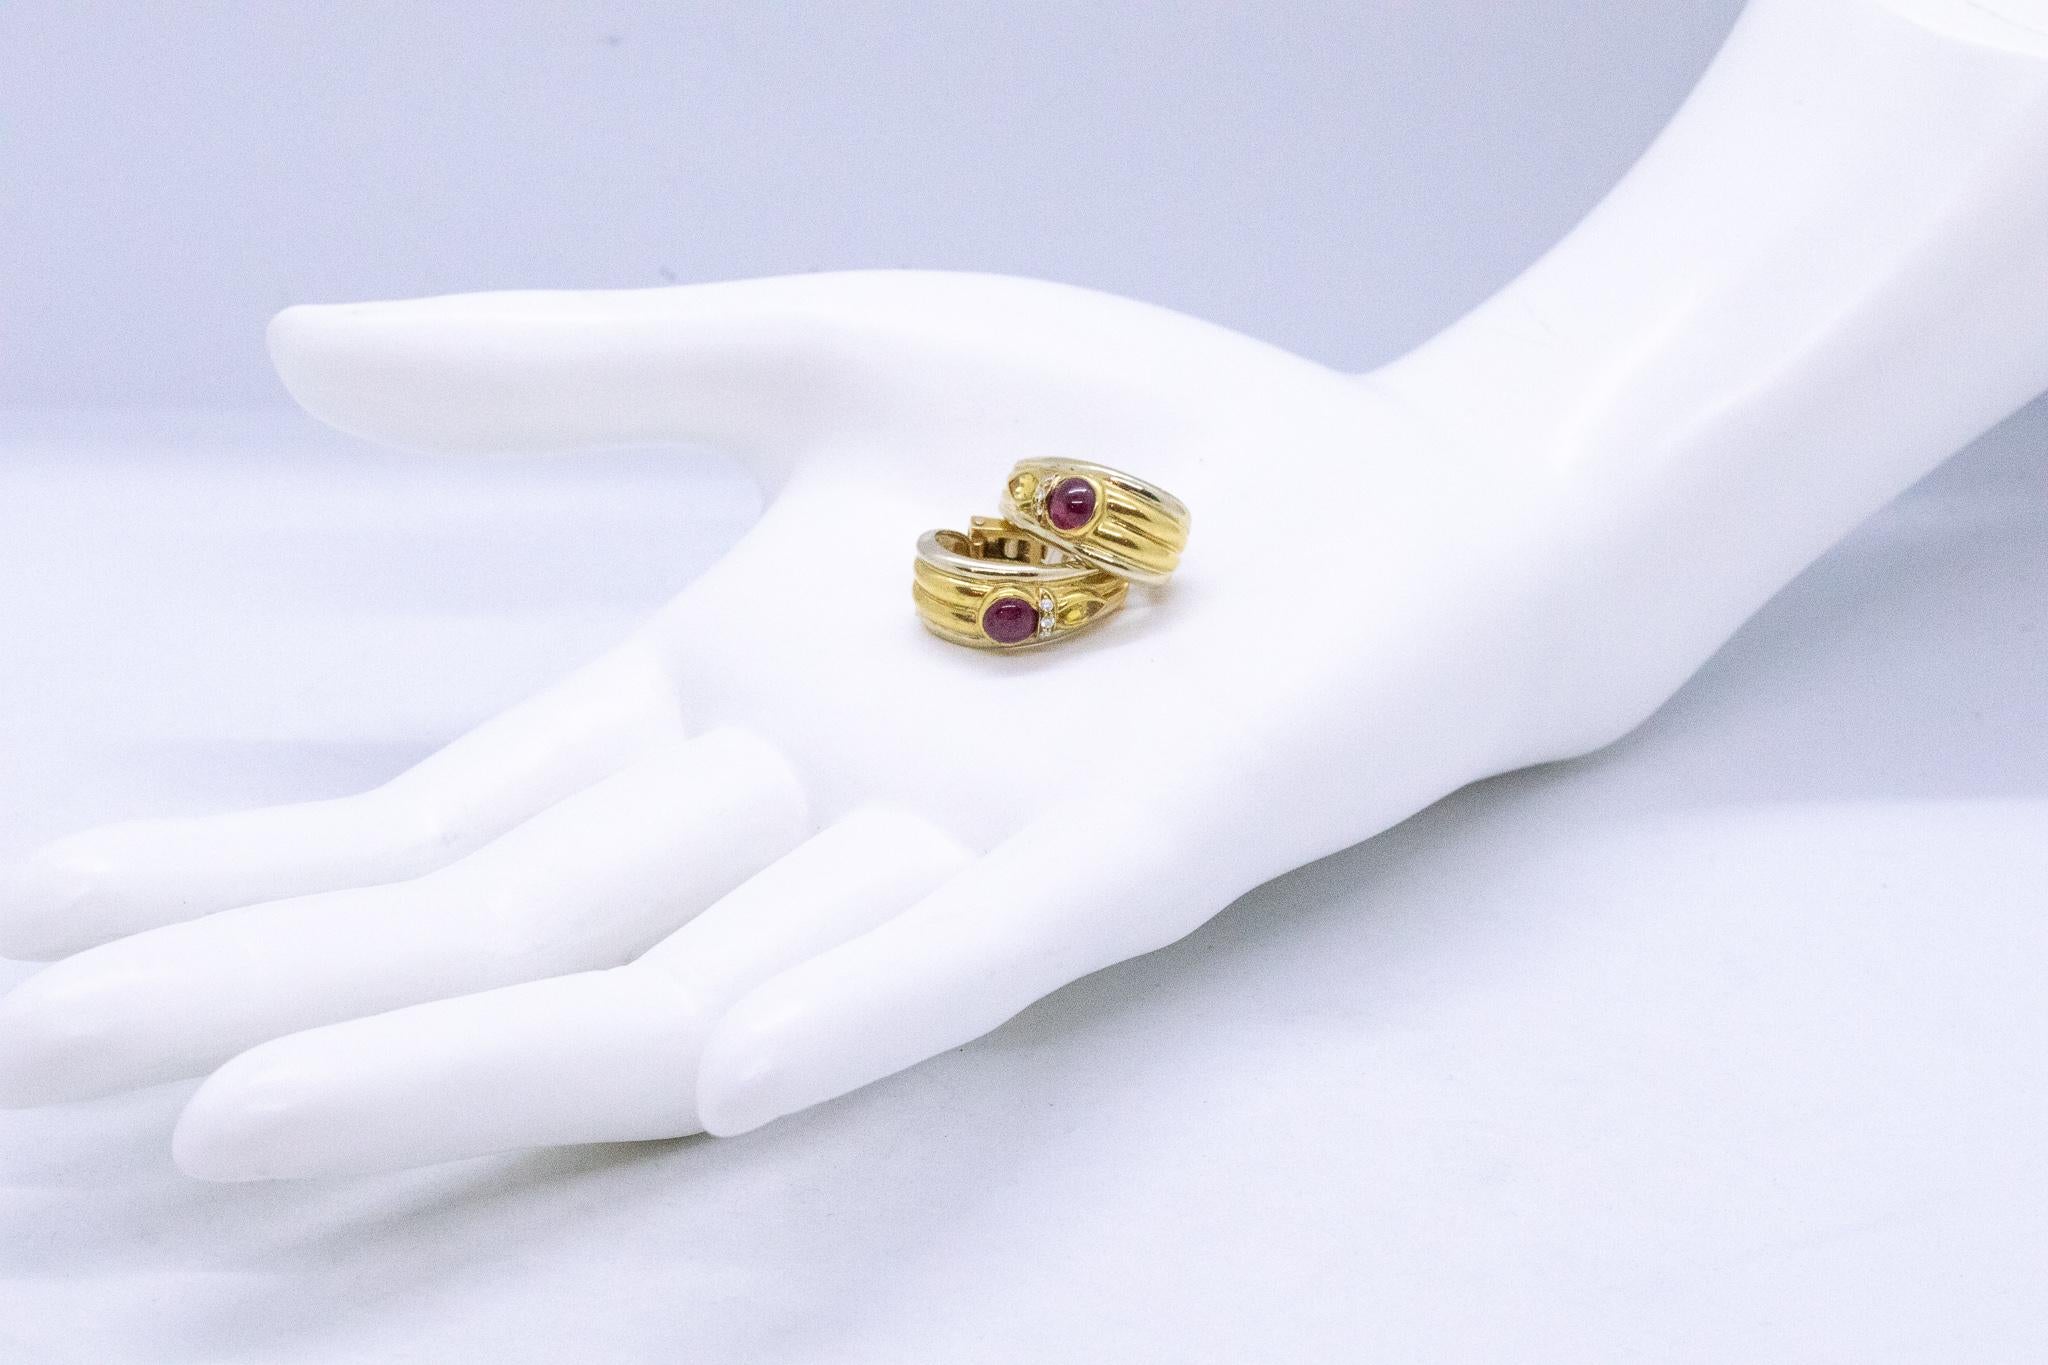 Moderniste Chaumet Paris Clips d'oreilles en or 18 carats avec rubis, saphirs et diamants de 2,34 carats